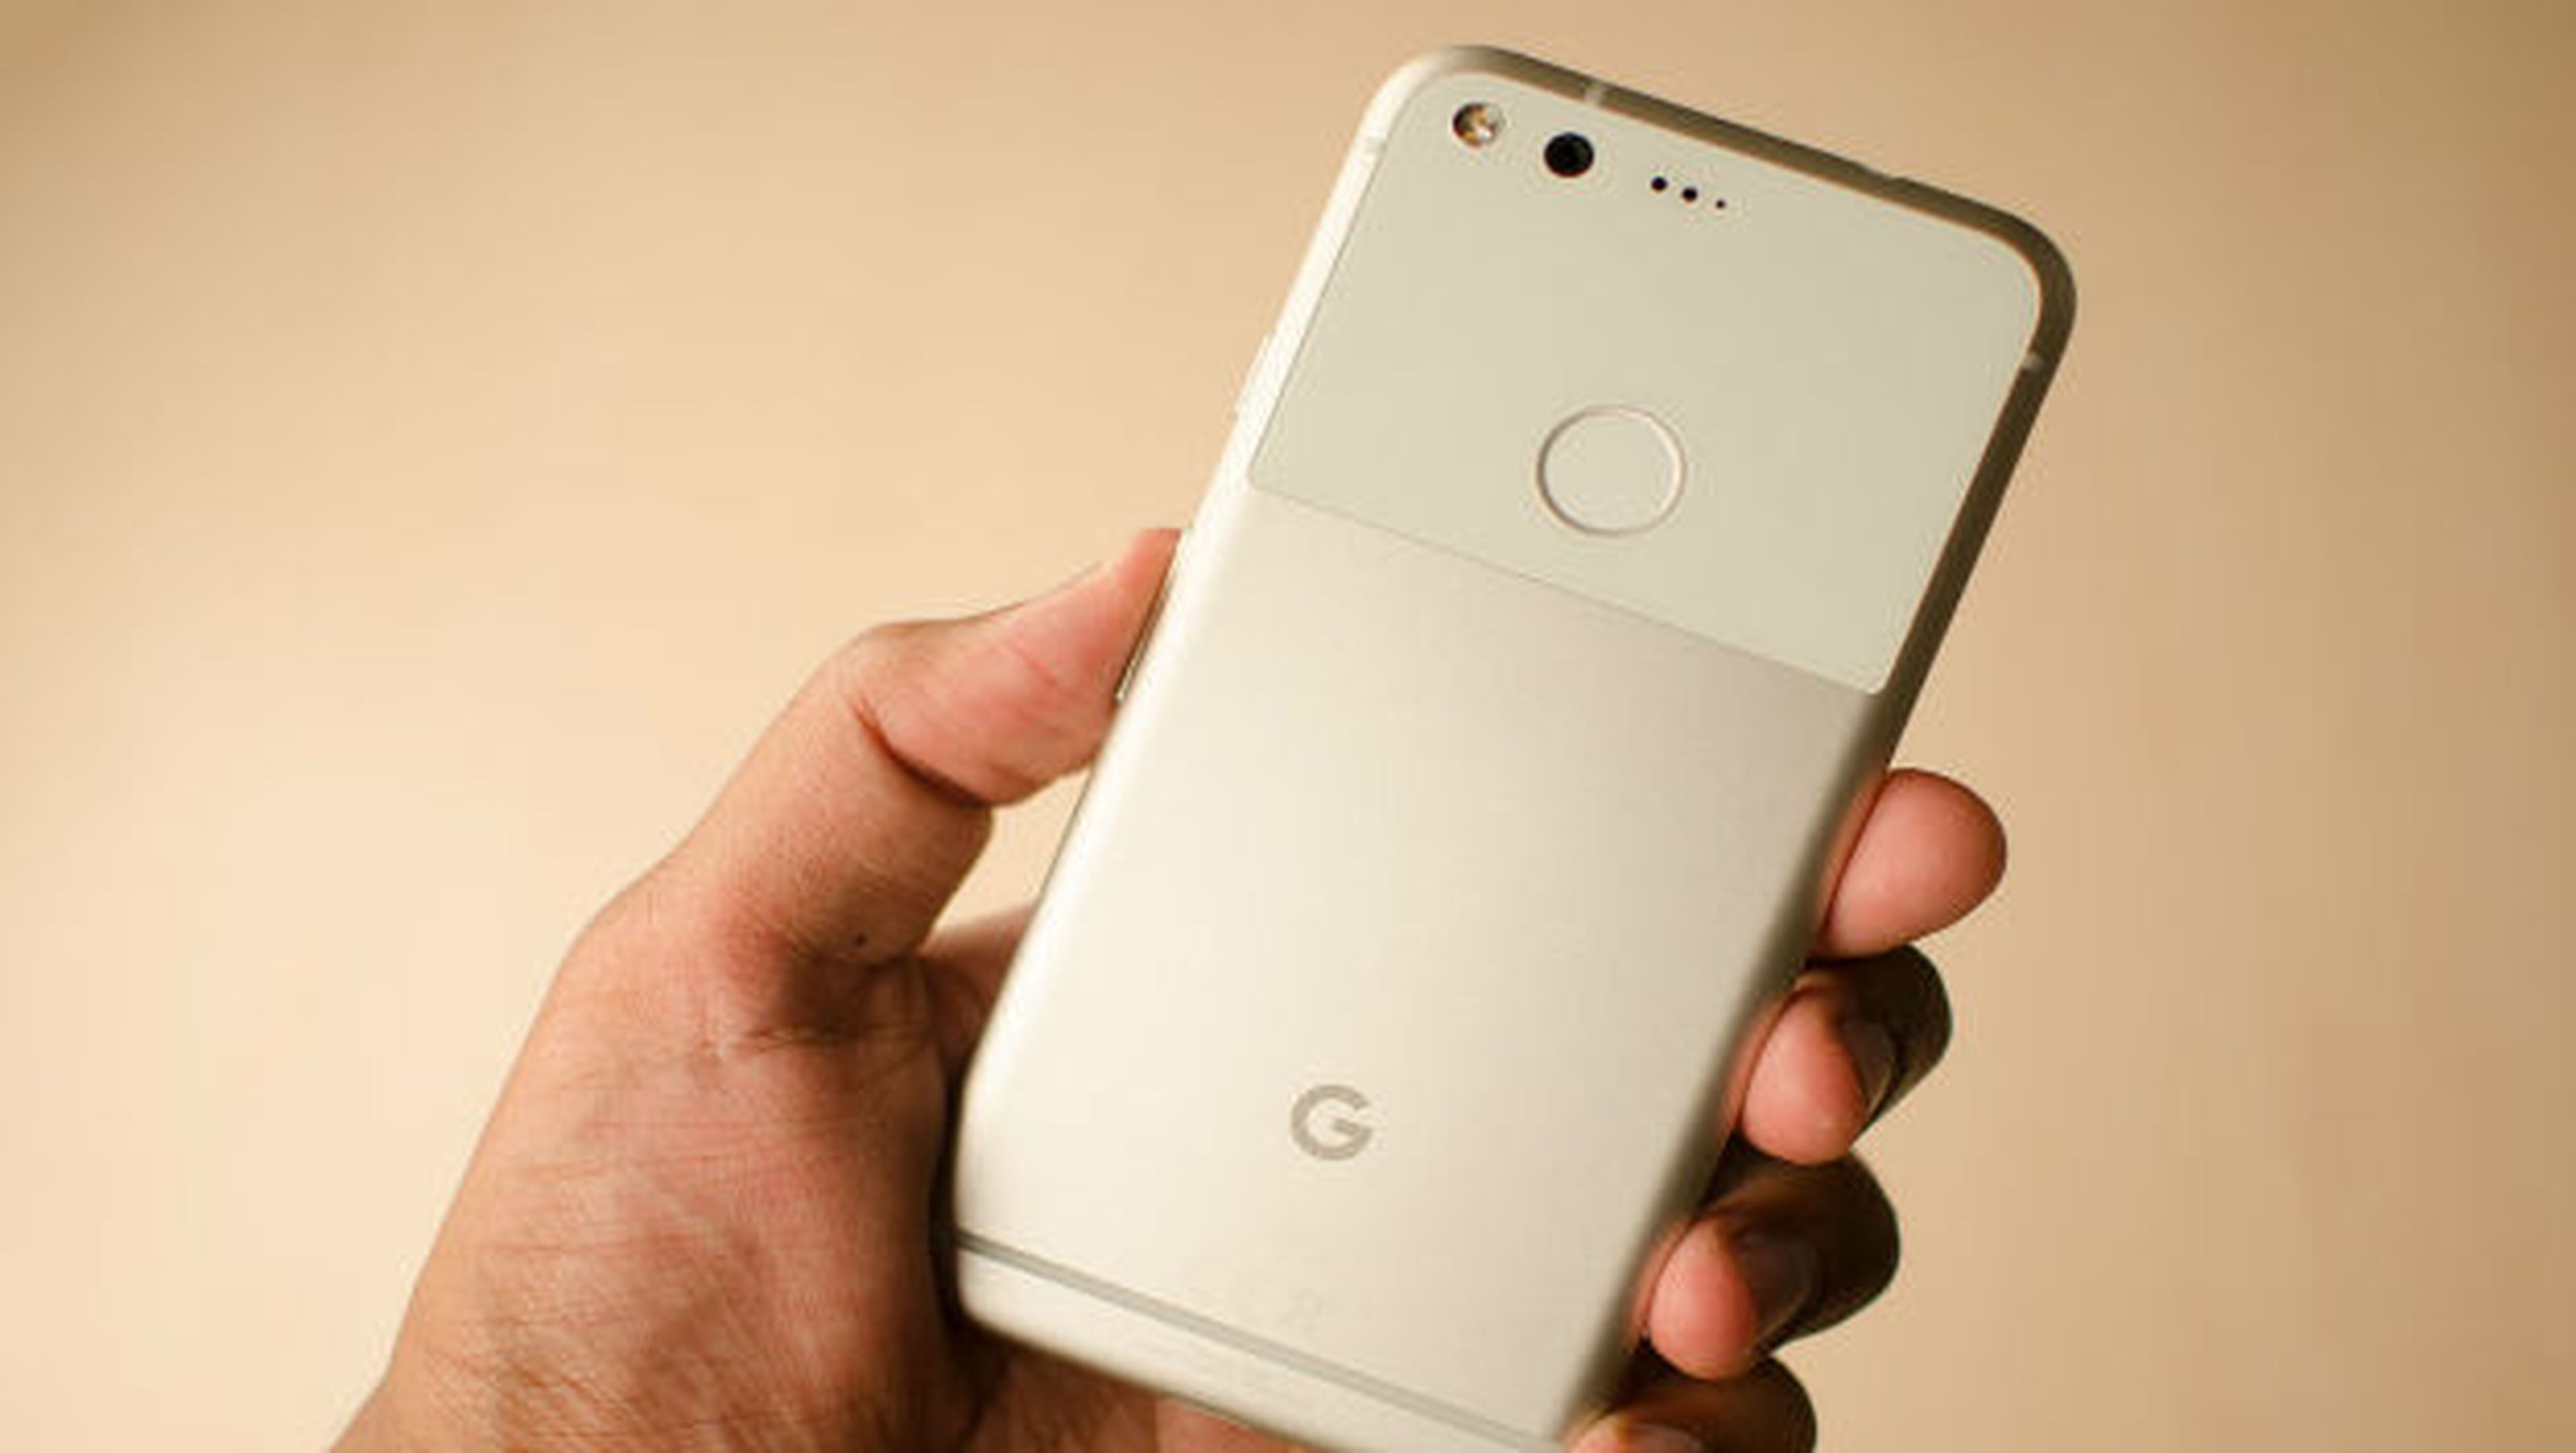 Repasamos todo lo que sabemos hasta ahora del próximo smartphone de Google, el Google Pixel 2